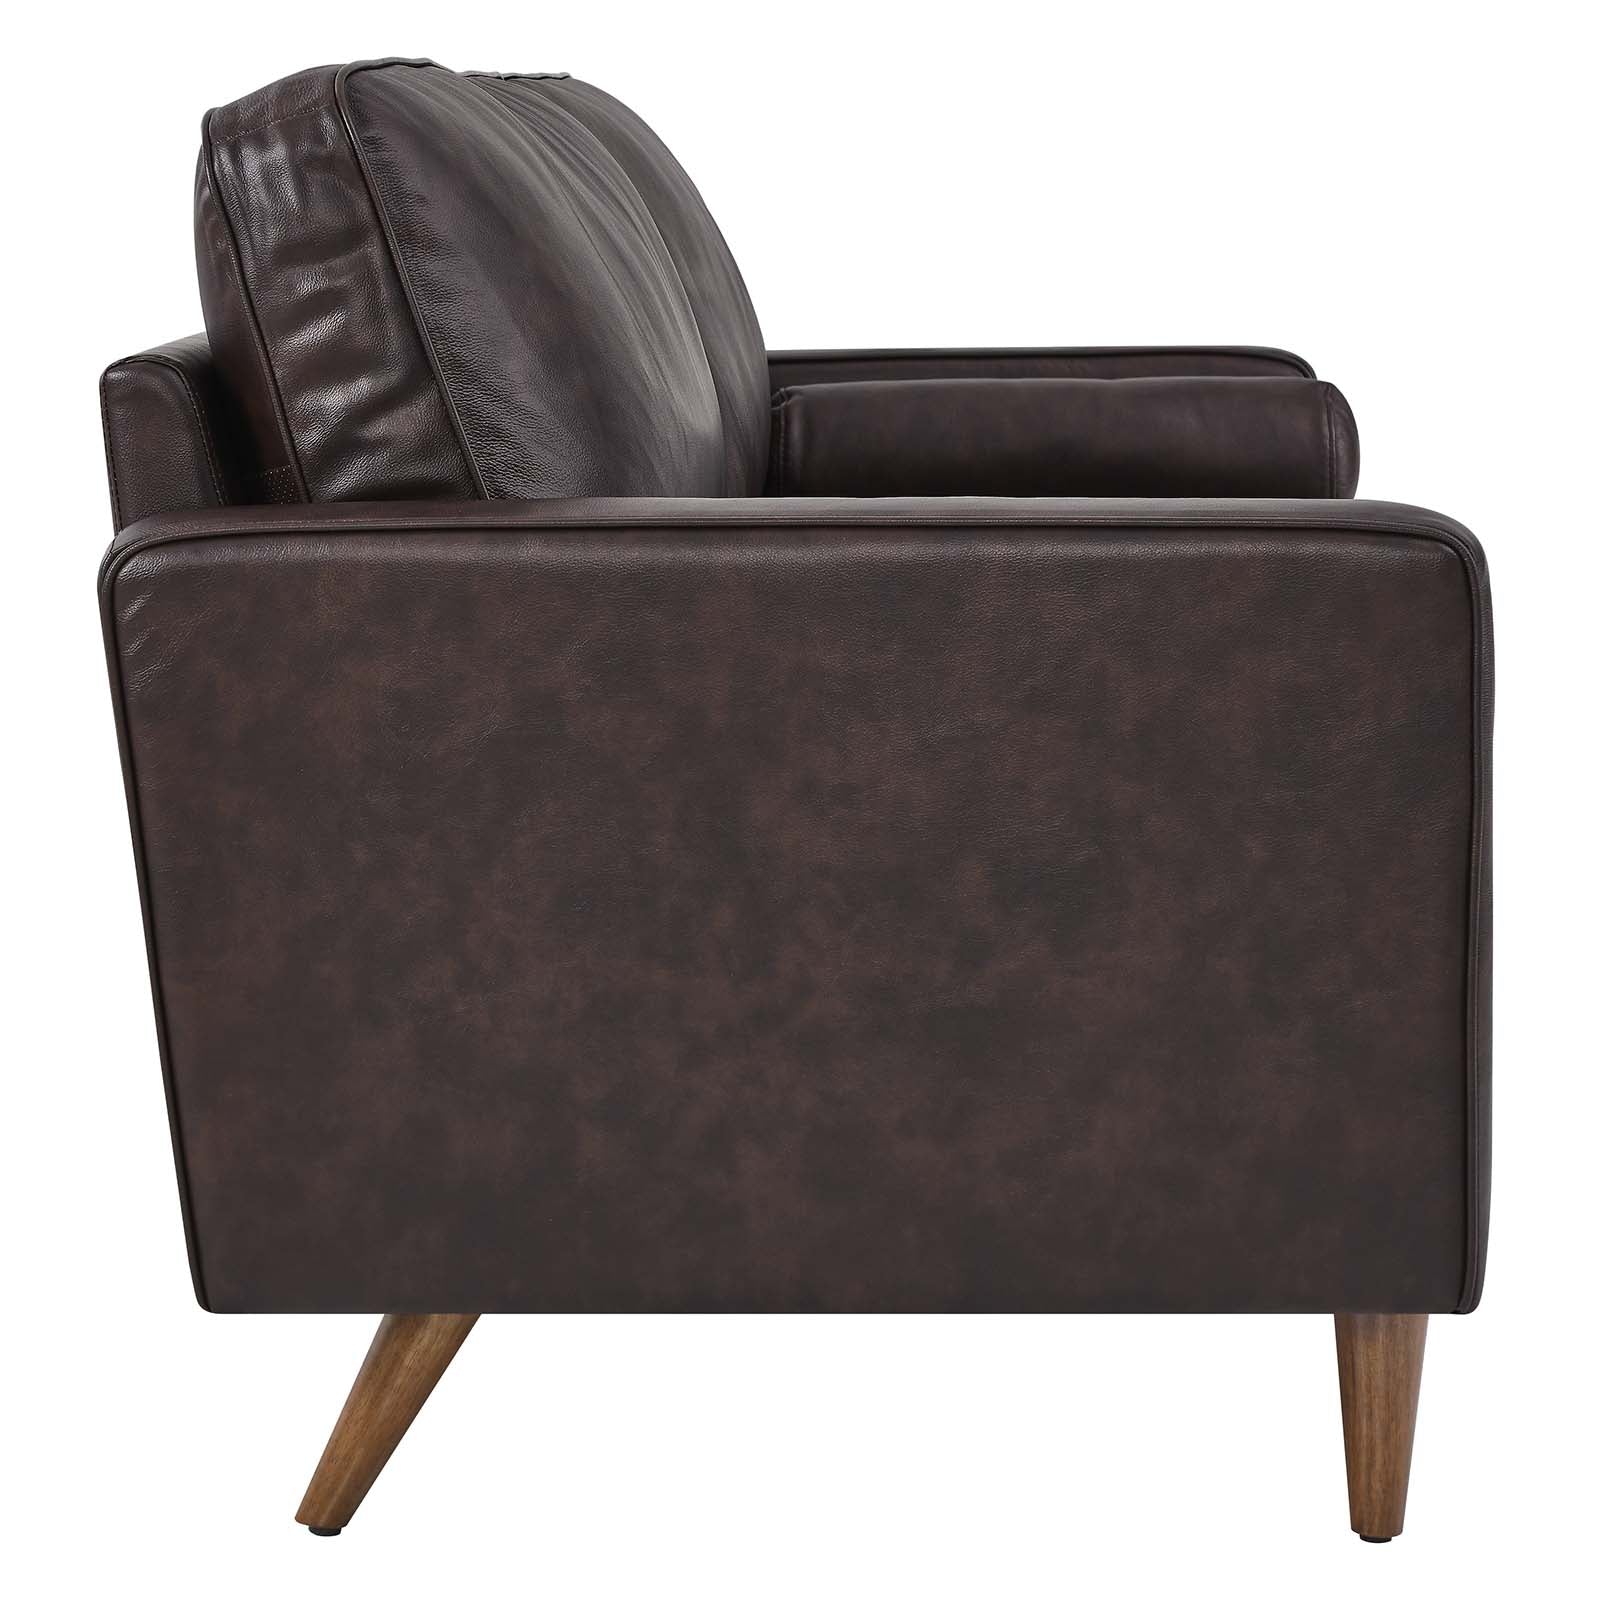 Modway Sofas & Couches - Valour 81" Leather Sofa Brown